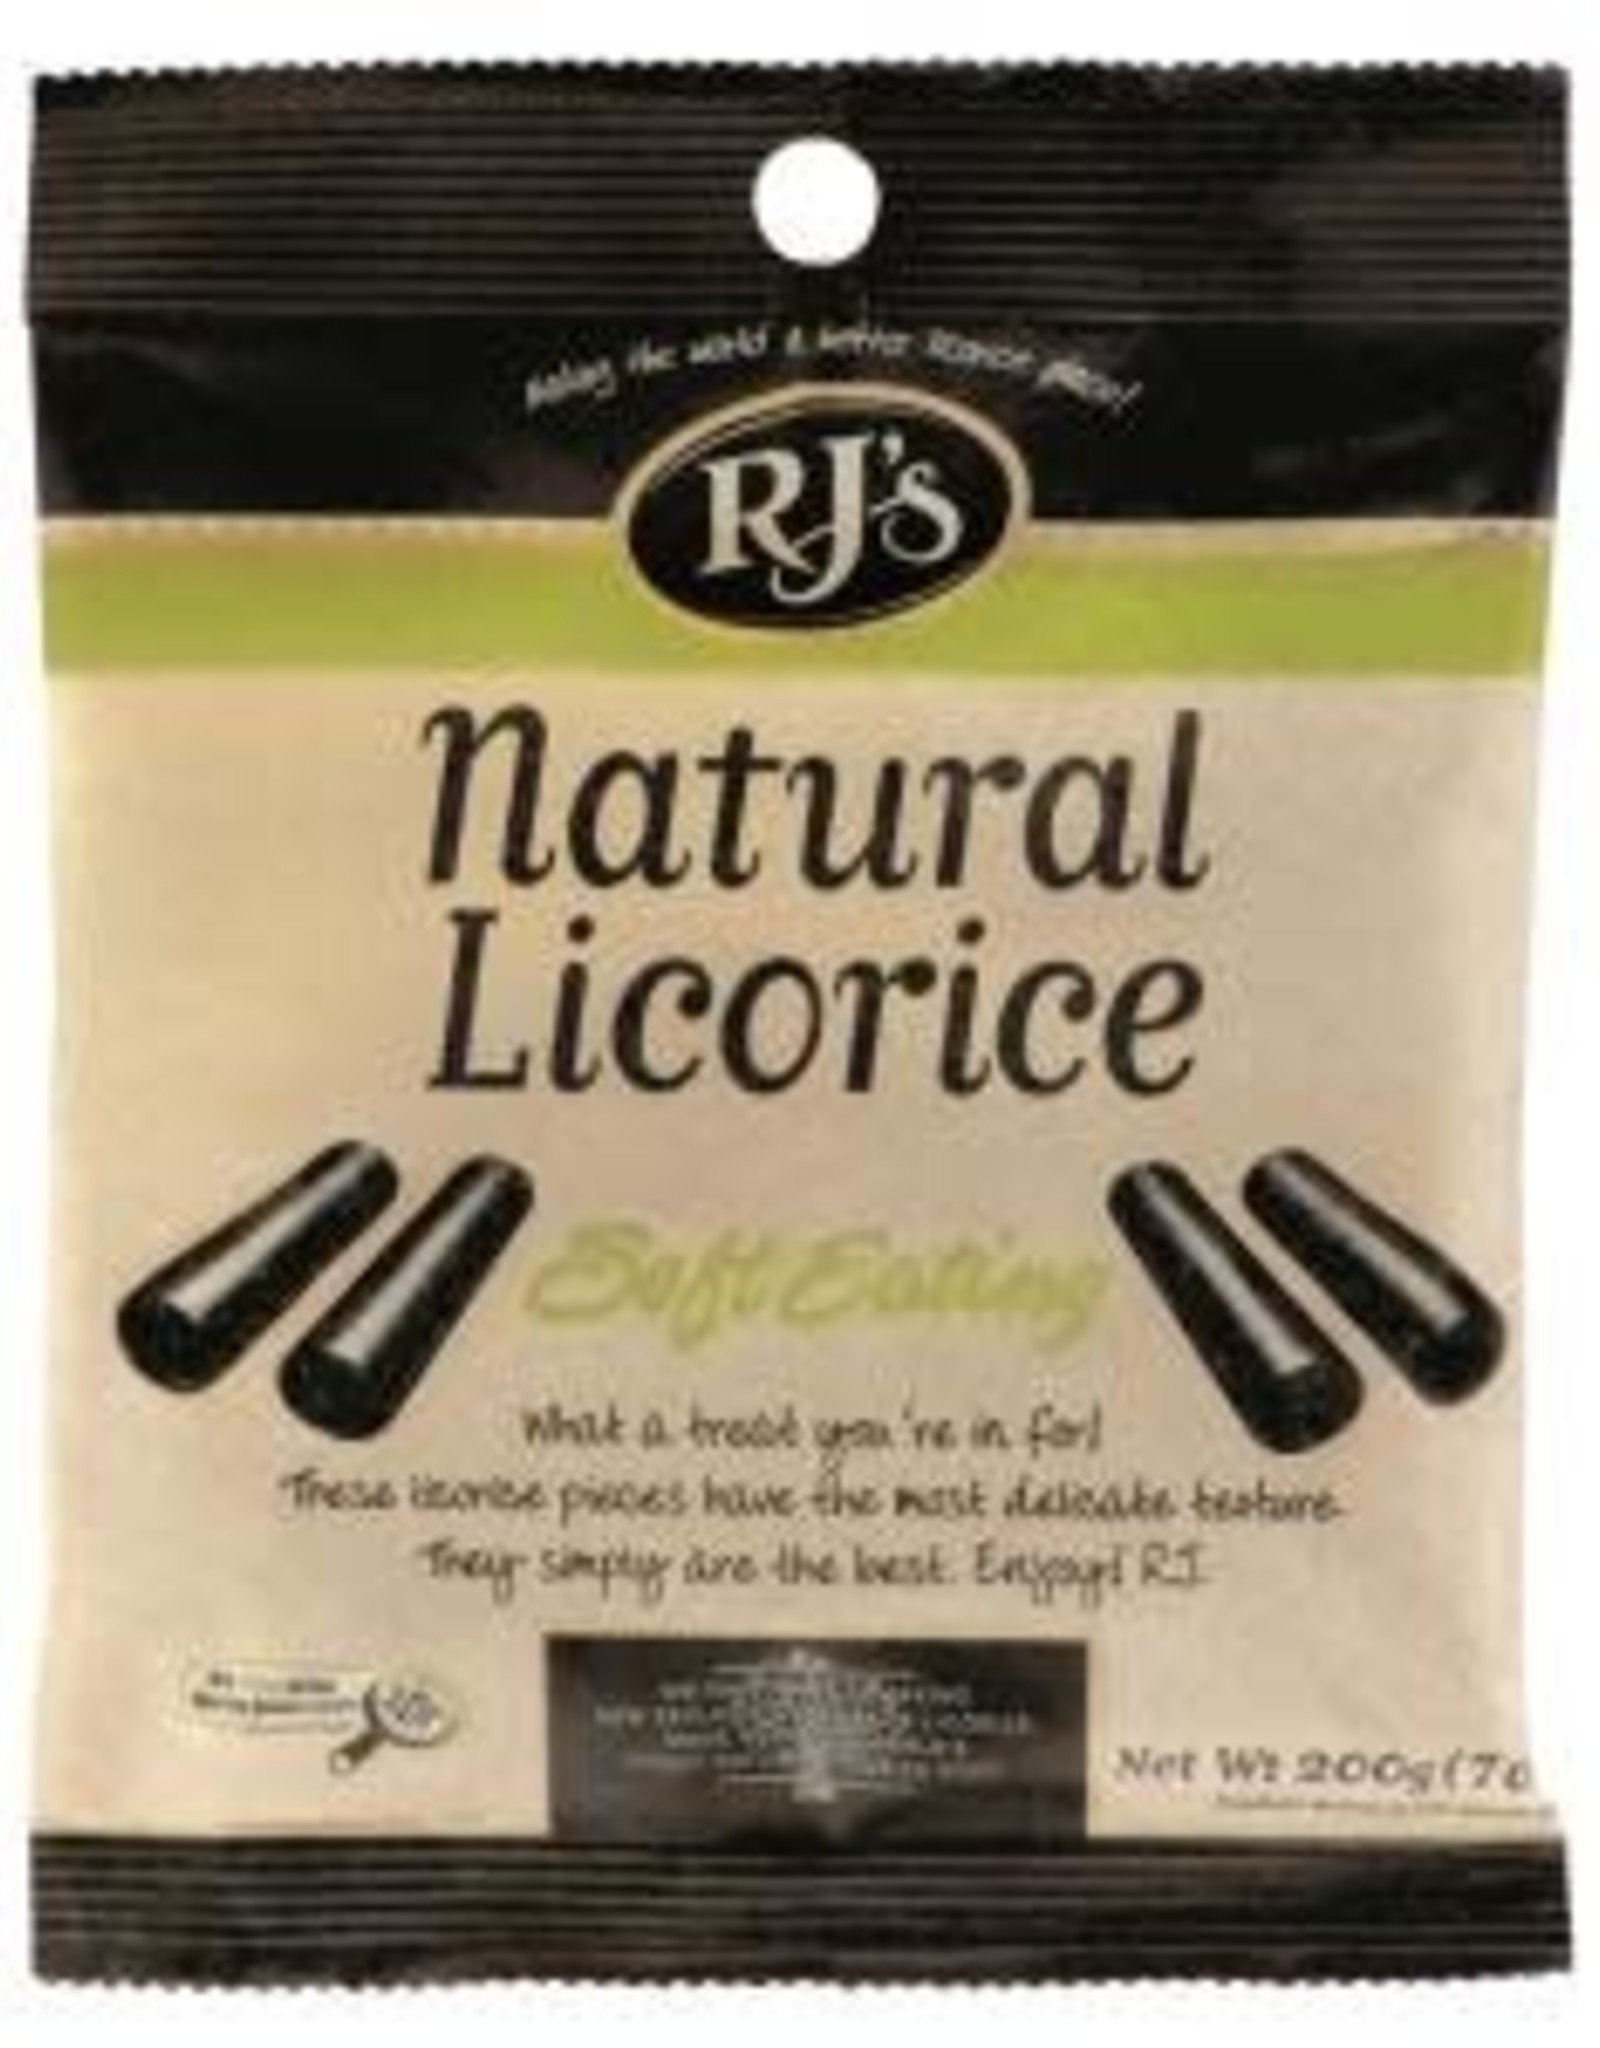 RJ's Soft Eating Original Licorice 7.05oz